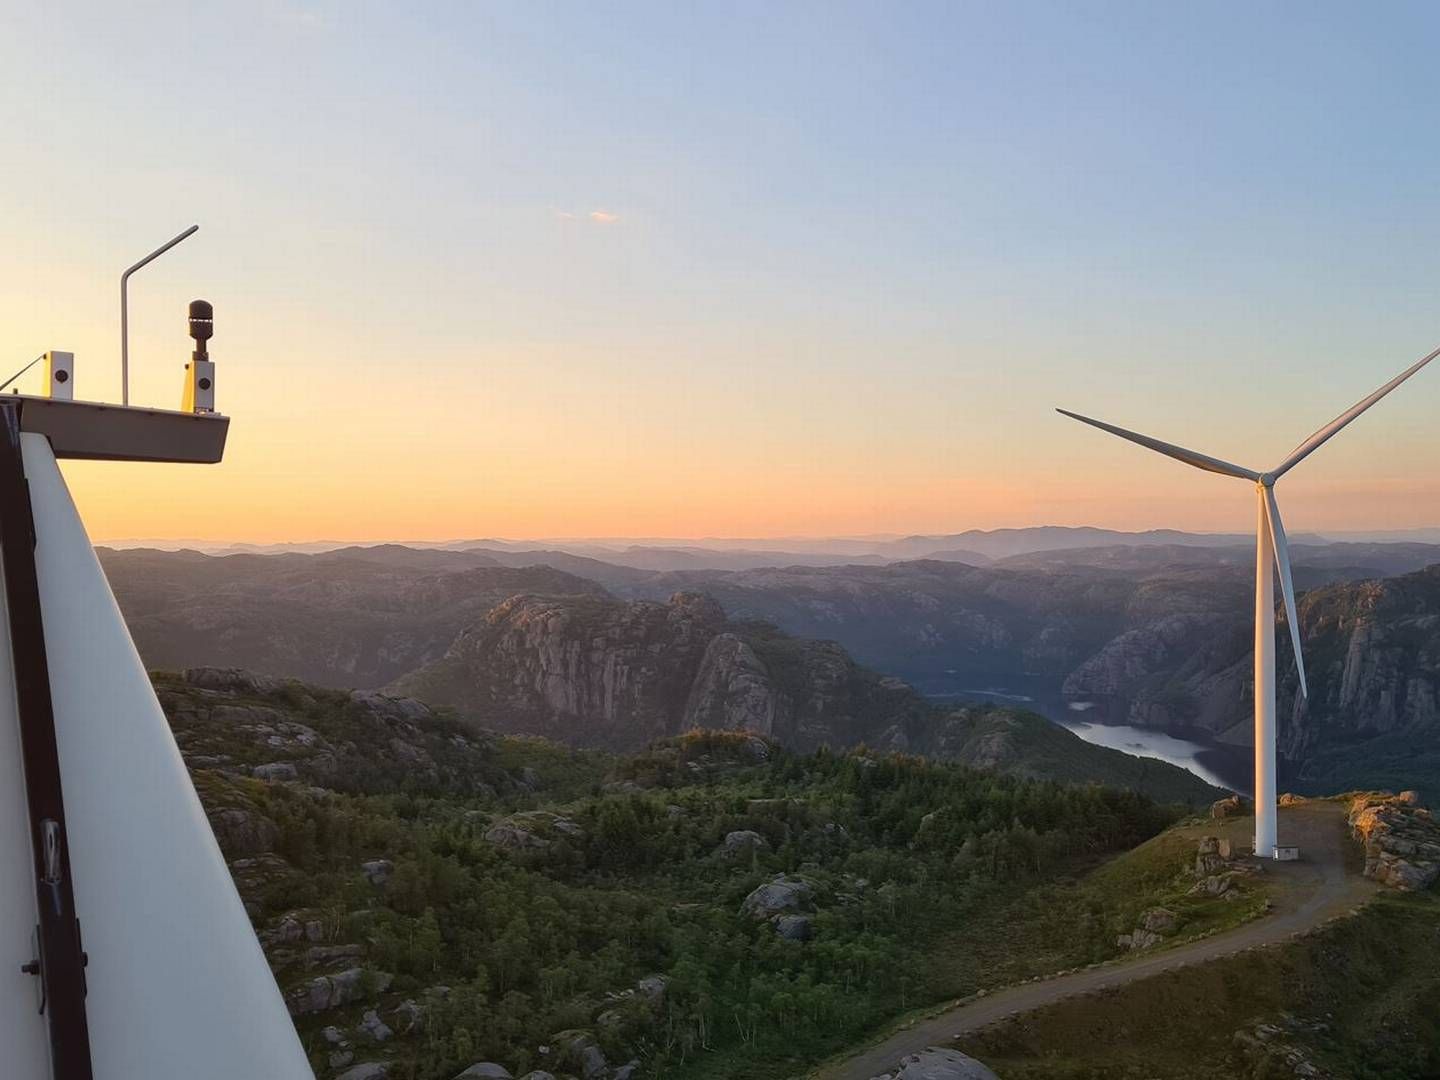 KAN BLI UTVIDET: Fred. Olsen Renewables vurderer å gi nye tilskudd til vindparken. | Foto: Fred. Olsen Renewables